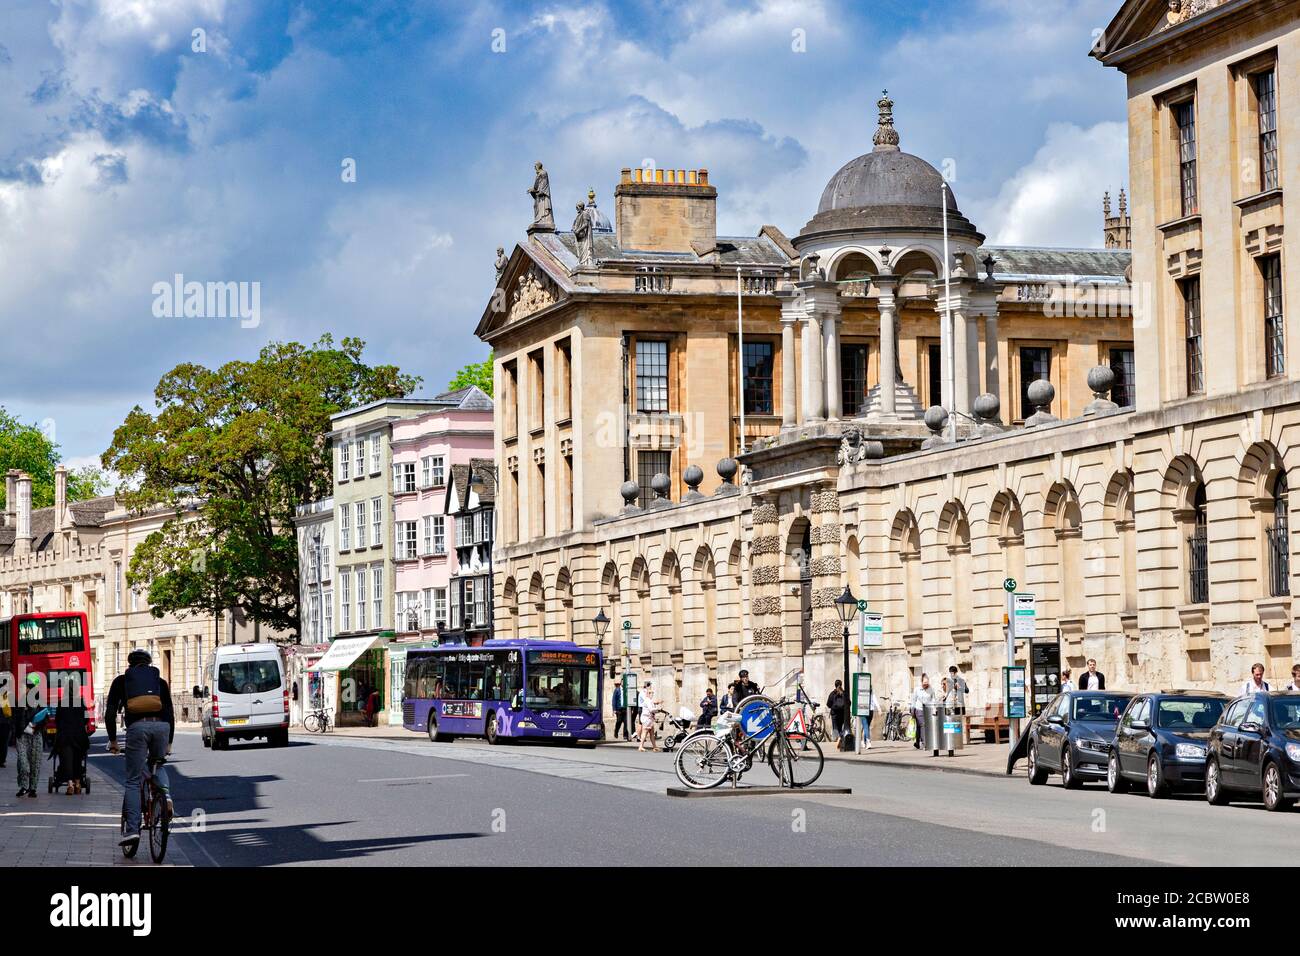 6 juin 2019 : Oxford, Royaume-Uni. La rue High Street, avec Queen's College sur la droite. Les gens qui marchent le long, les bus, la circulation. Banque D'Images